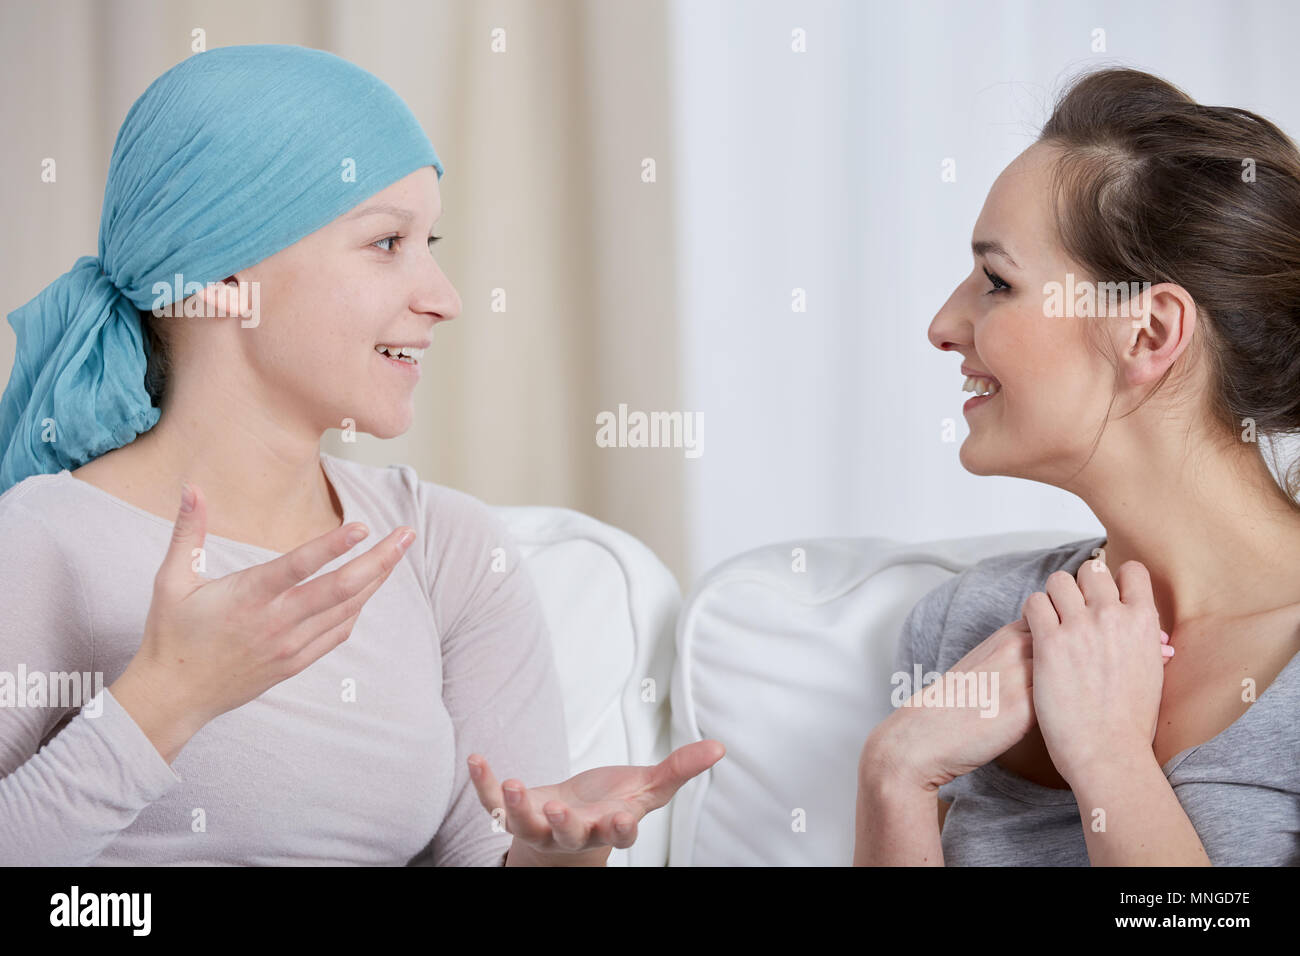 Junge Krebs Frau mit Kopftuch, im Gespräch mit Freund Stockfoto